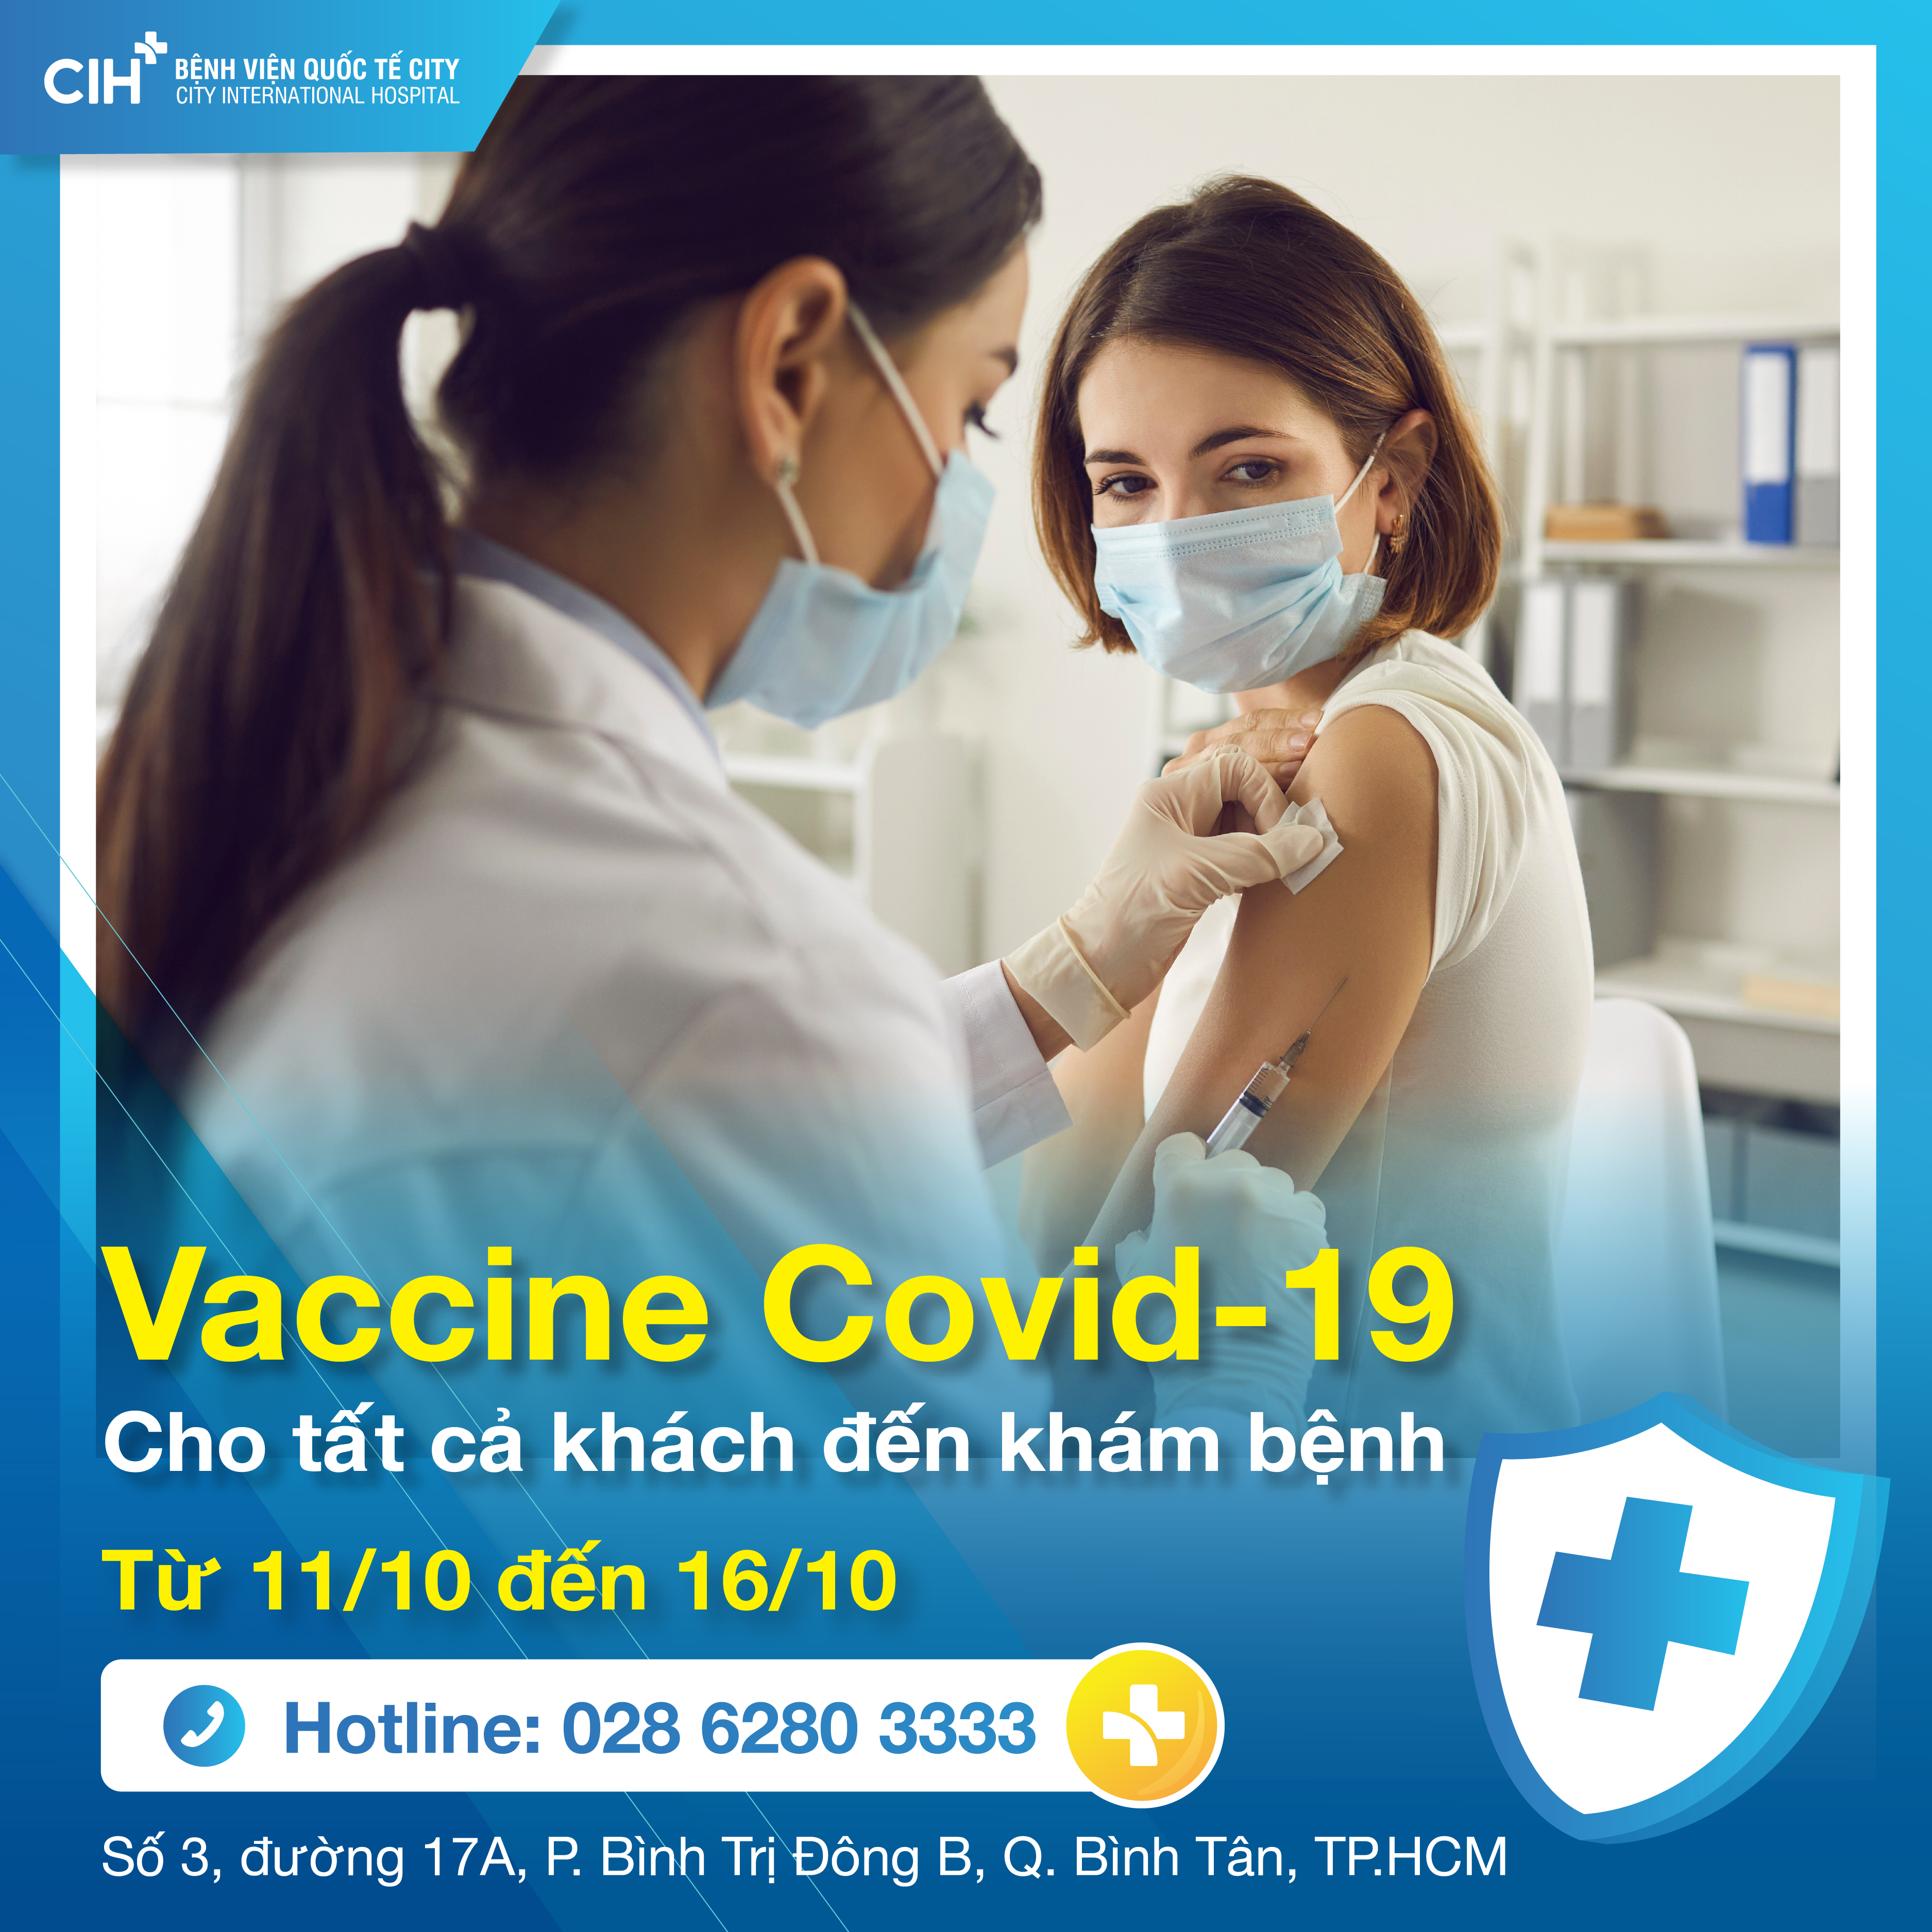 Vắc xin Covid-19 miễn phí cho tất cả khách hàng đăng ký khám chữa bệnh tại Bệnh viện Quốc tế City